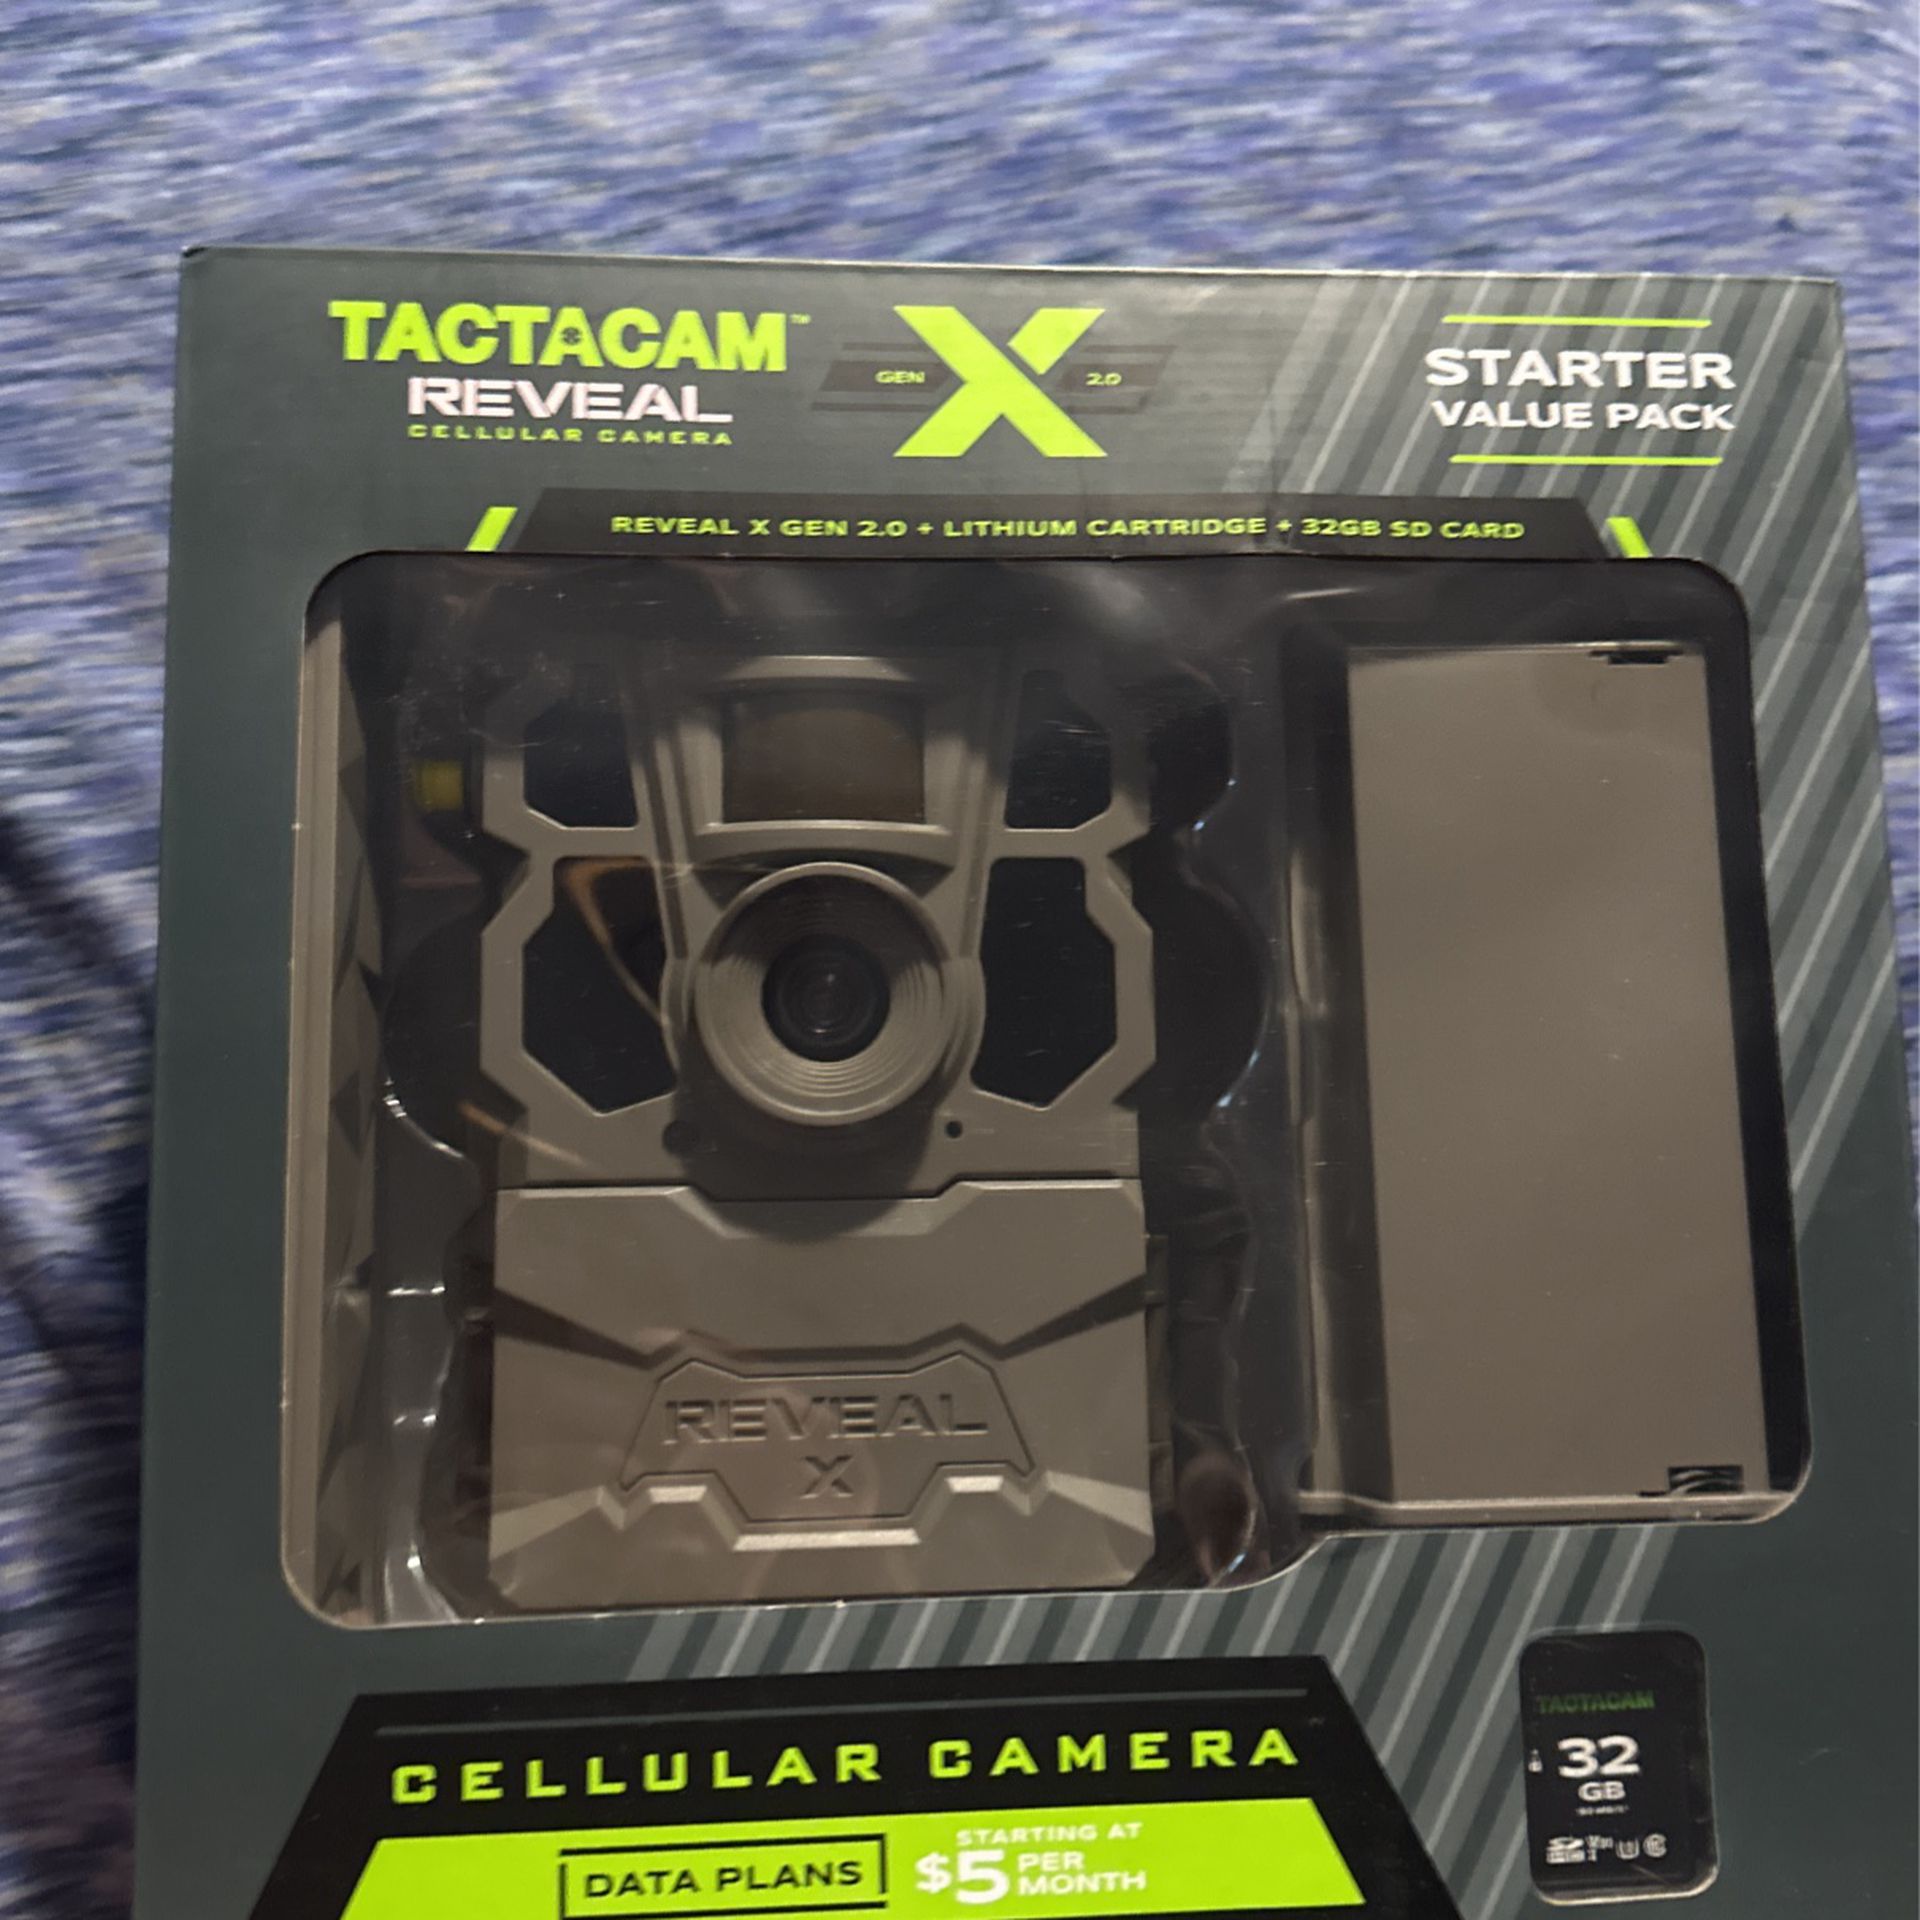 Reveal X Tactacam Cellular Camera 